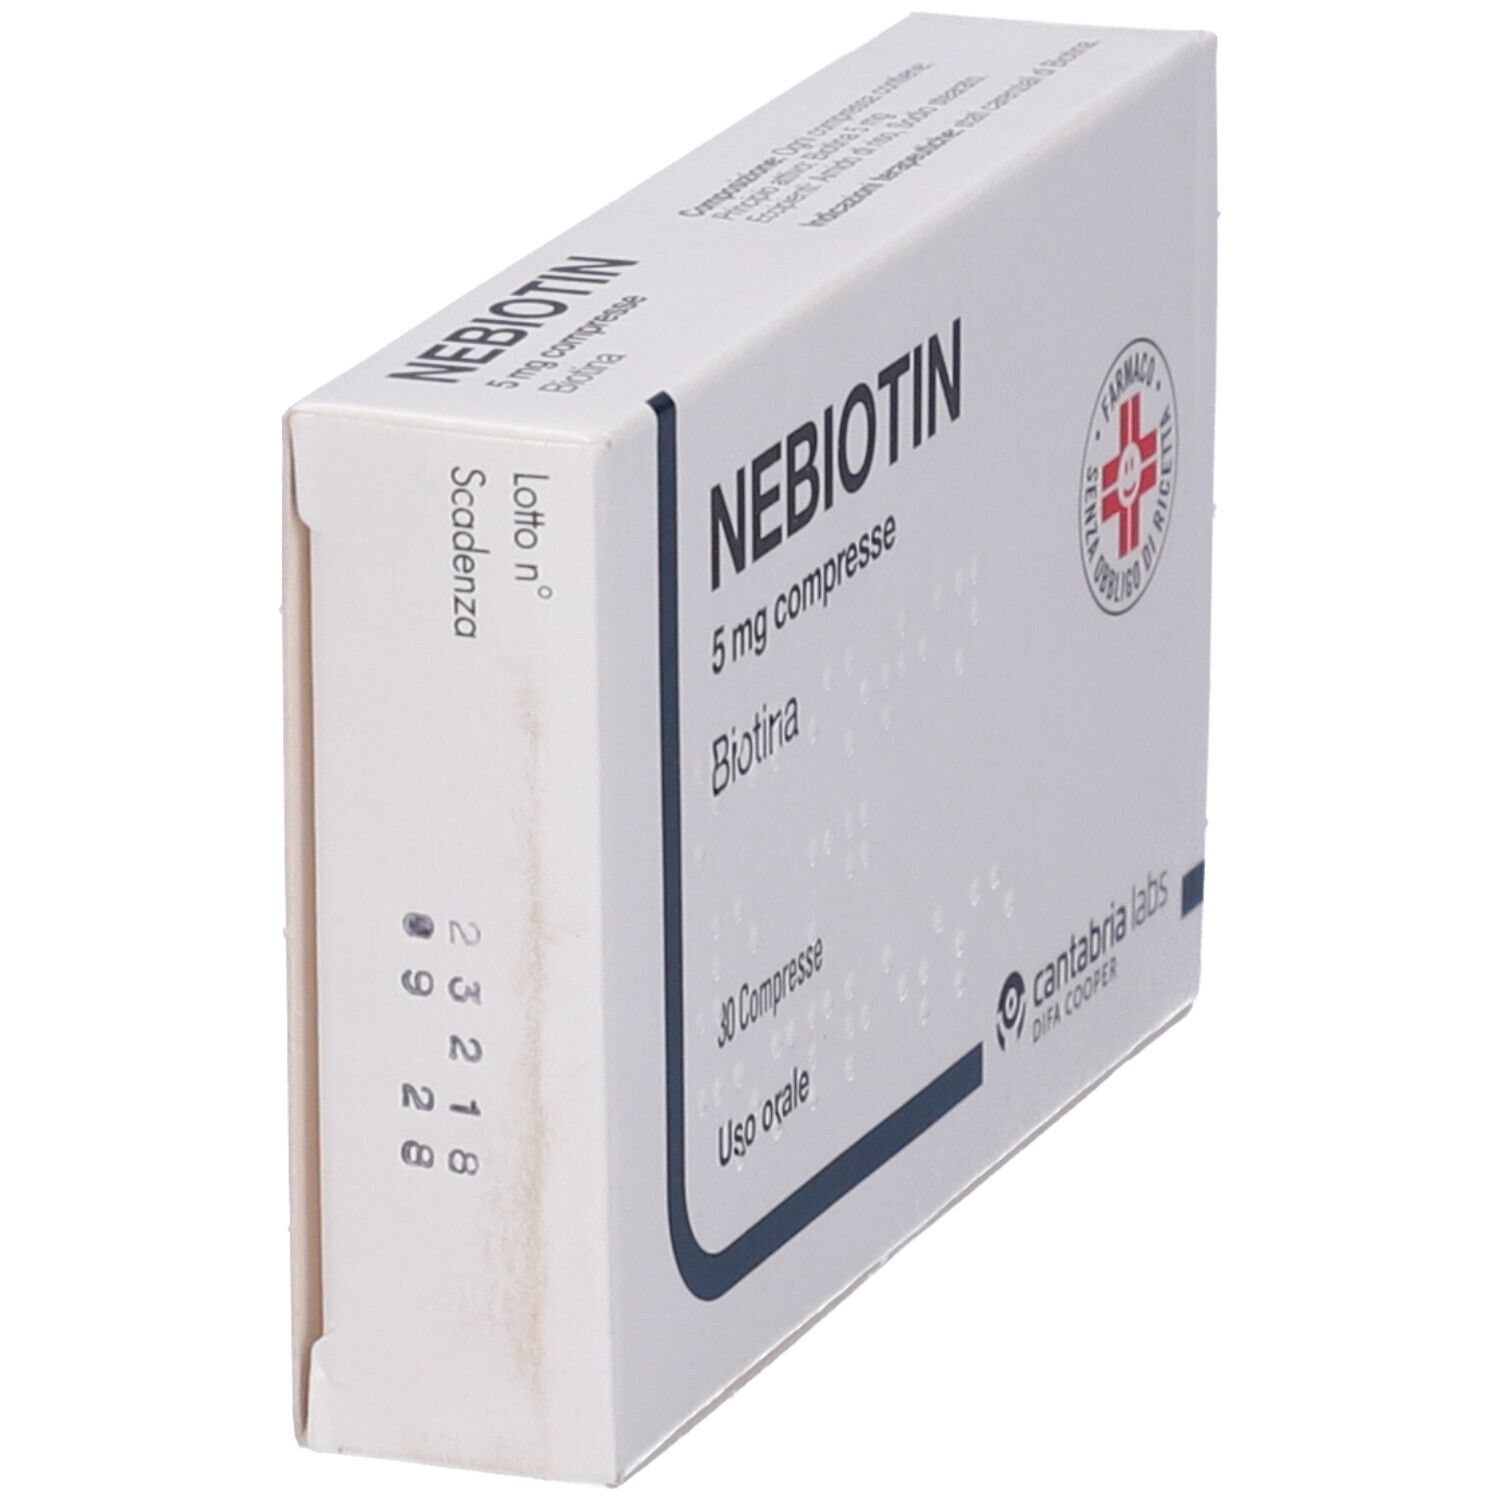 NEBIOTIN 5 mg compresse